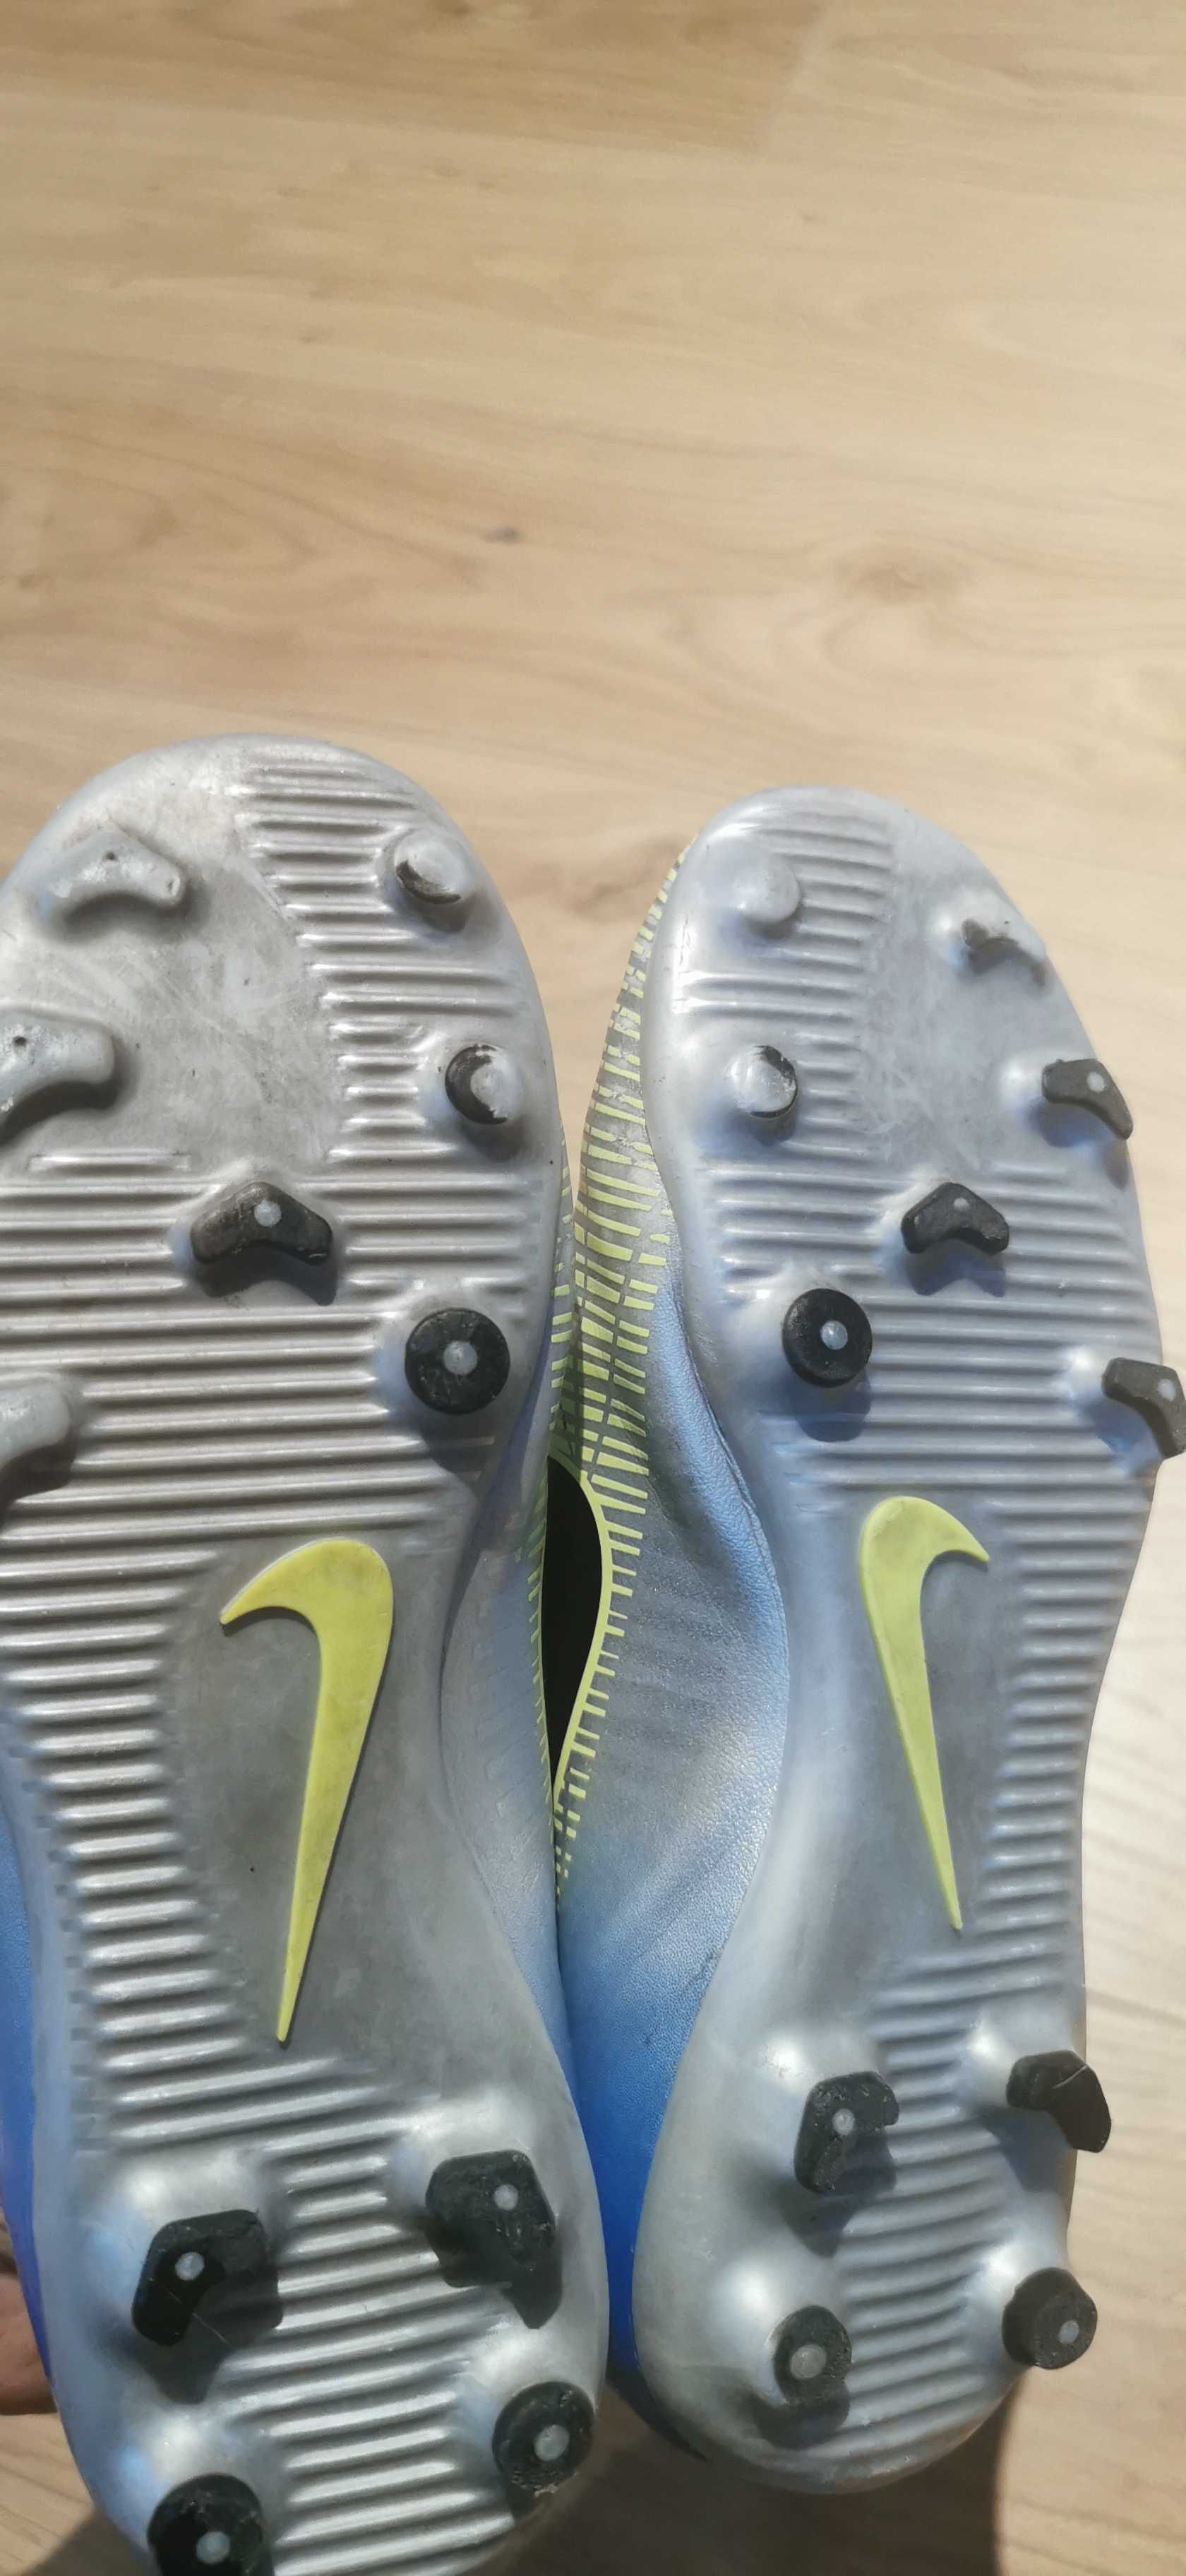 Buty piłkarskie Nike Mercurial rozmiar 32